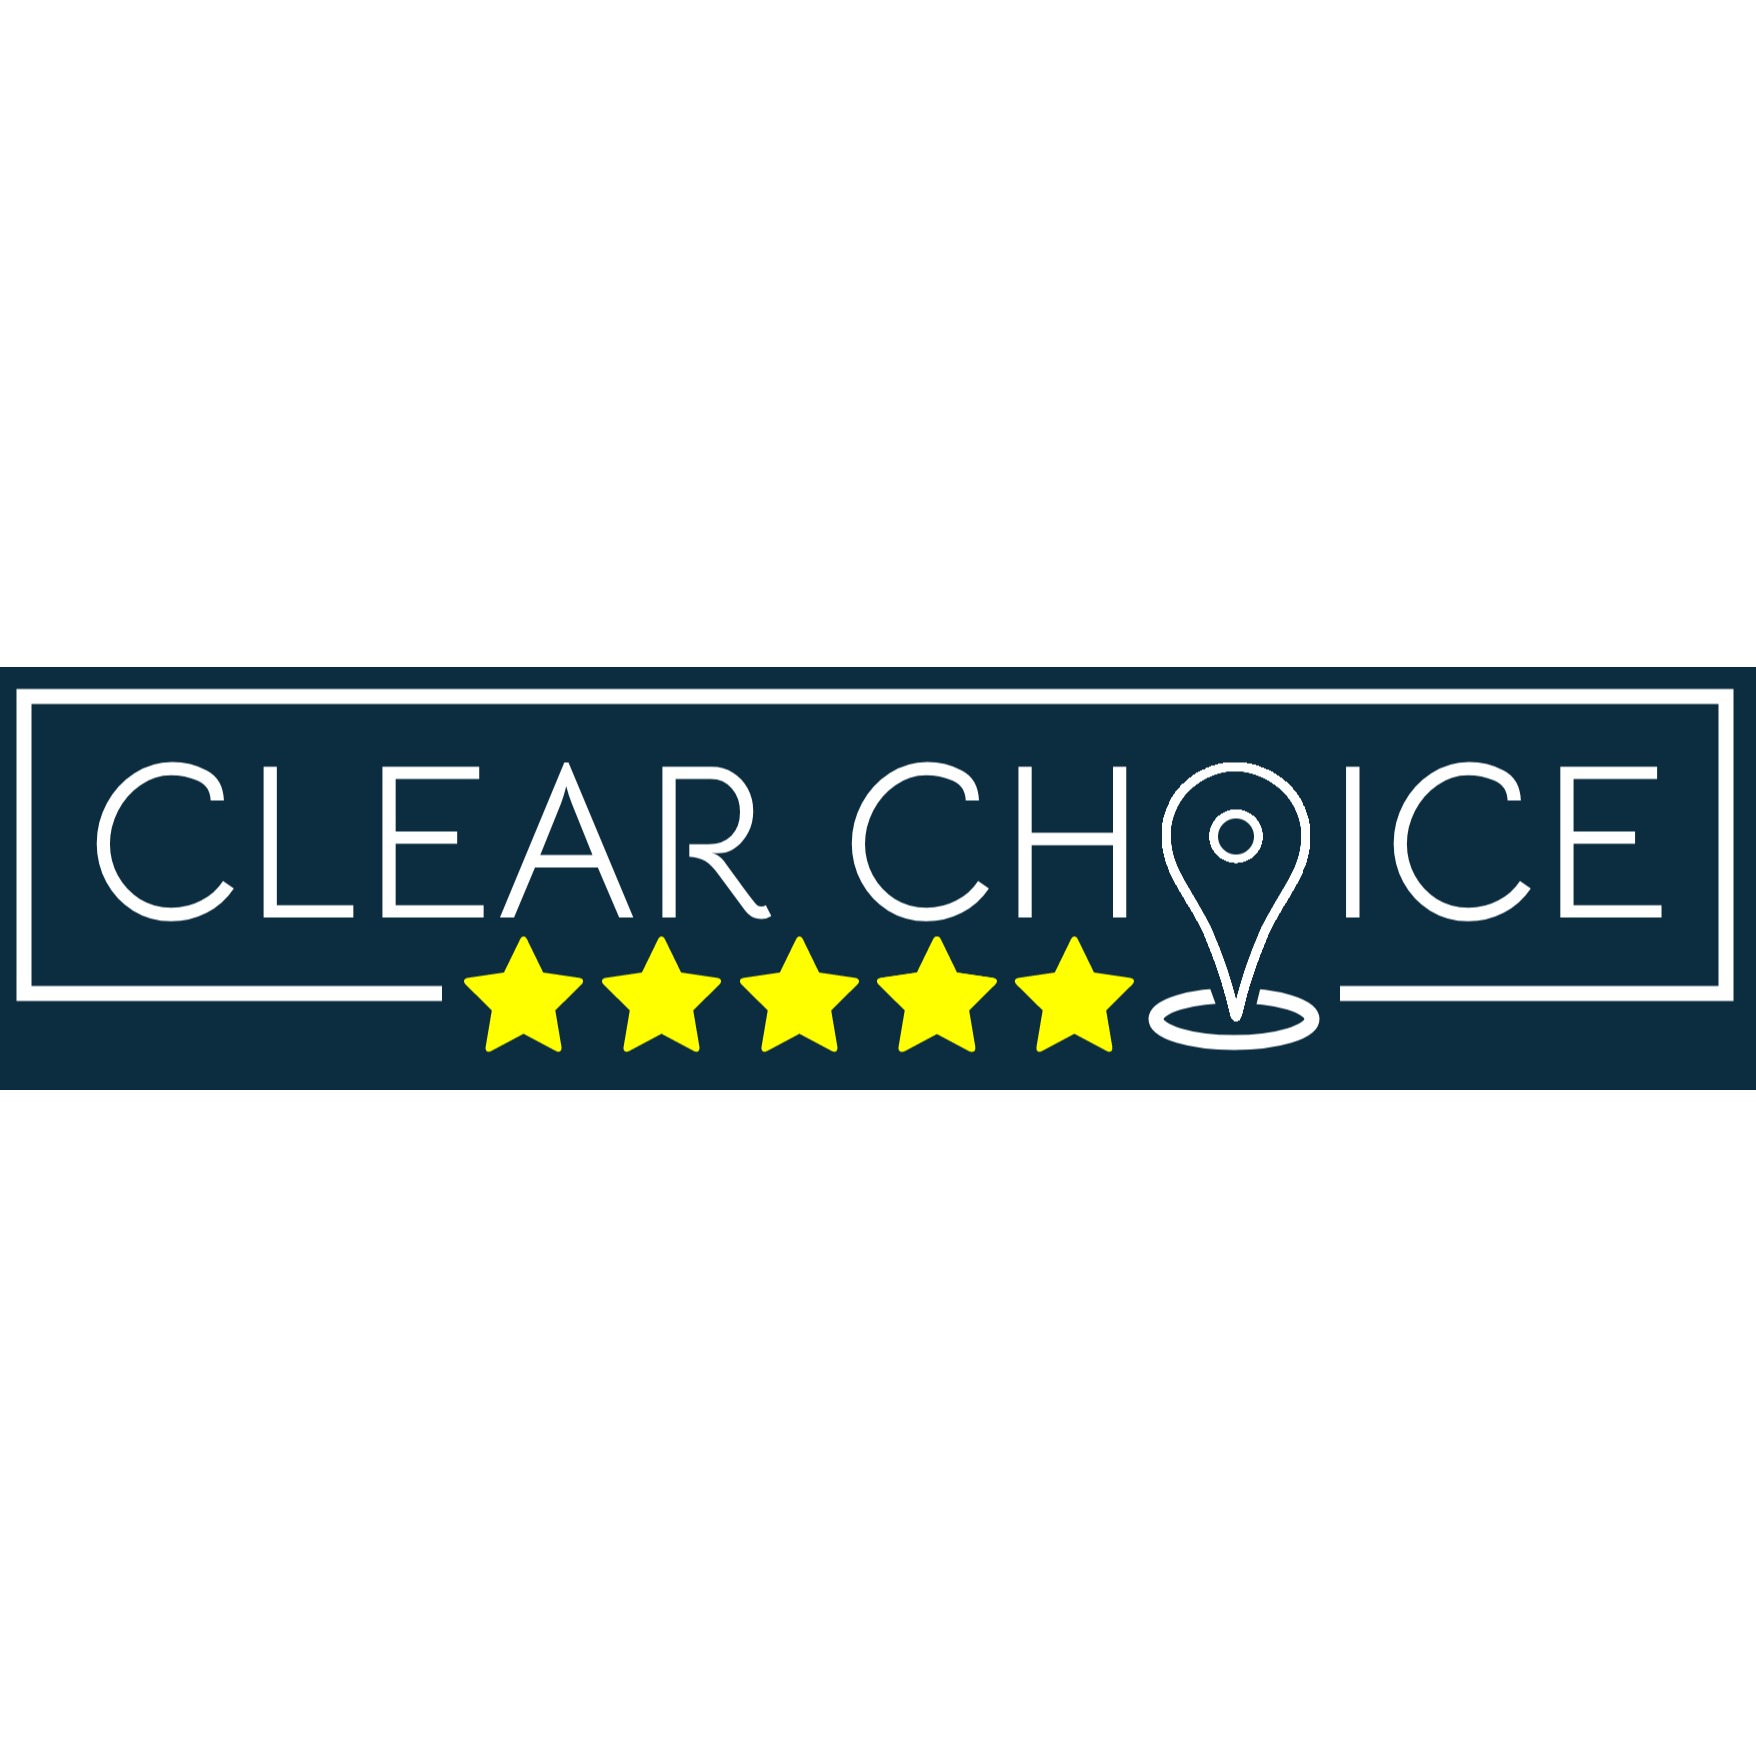 Clear choice